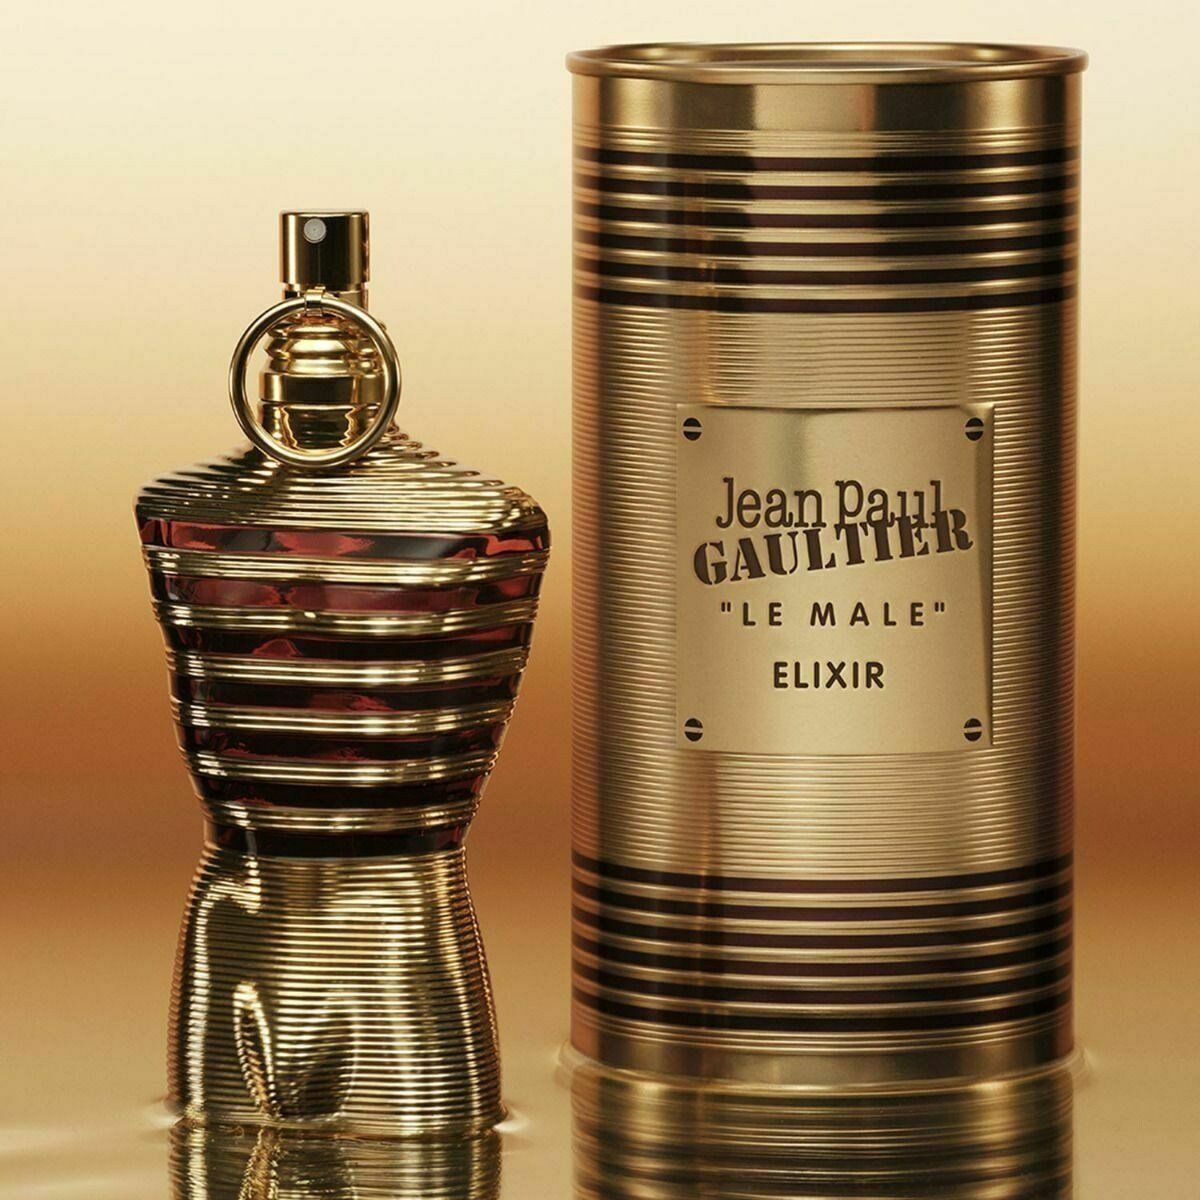  Jean Paul Gaultier Le Male Elixir 